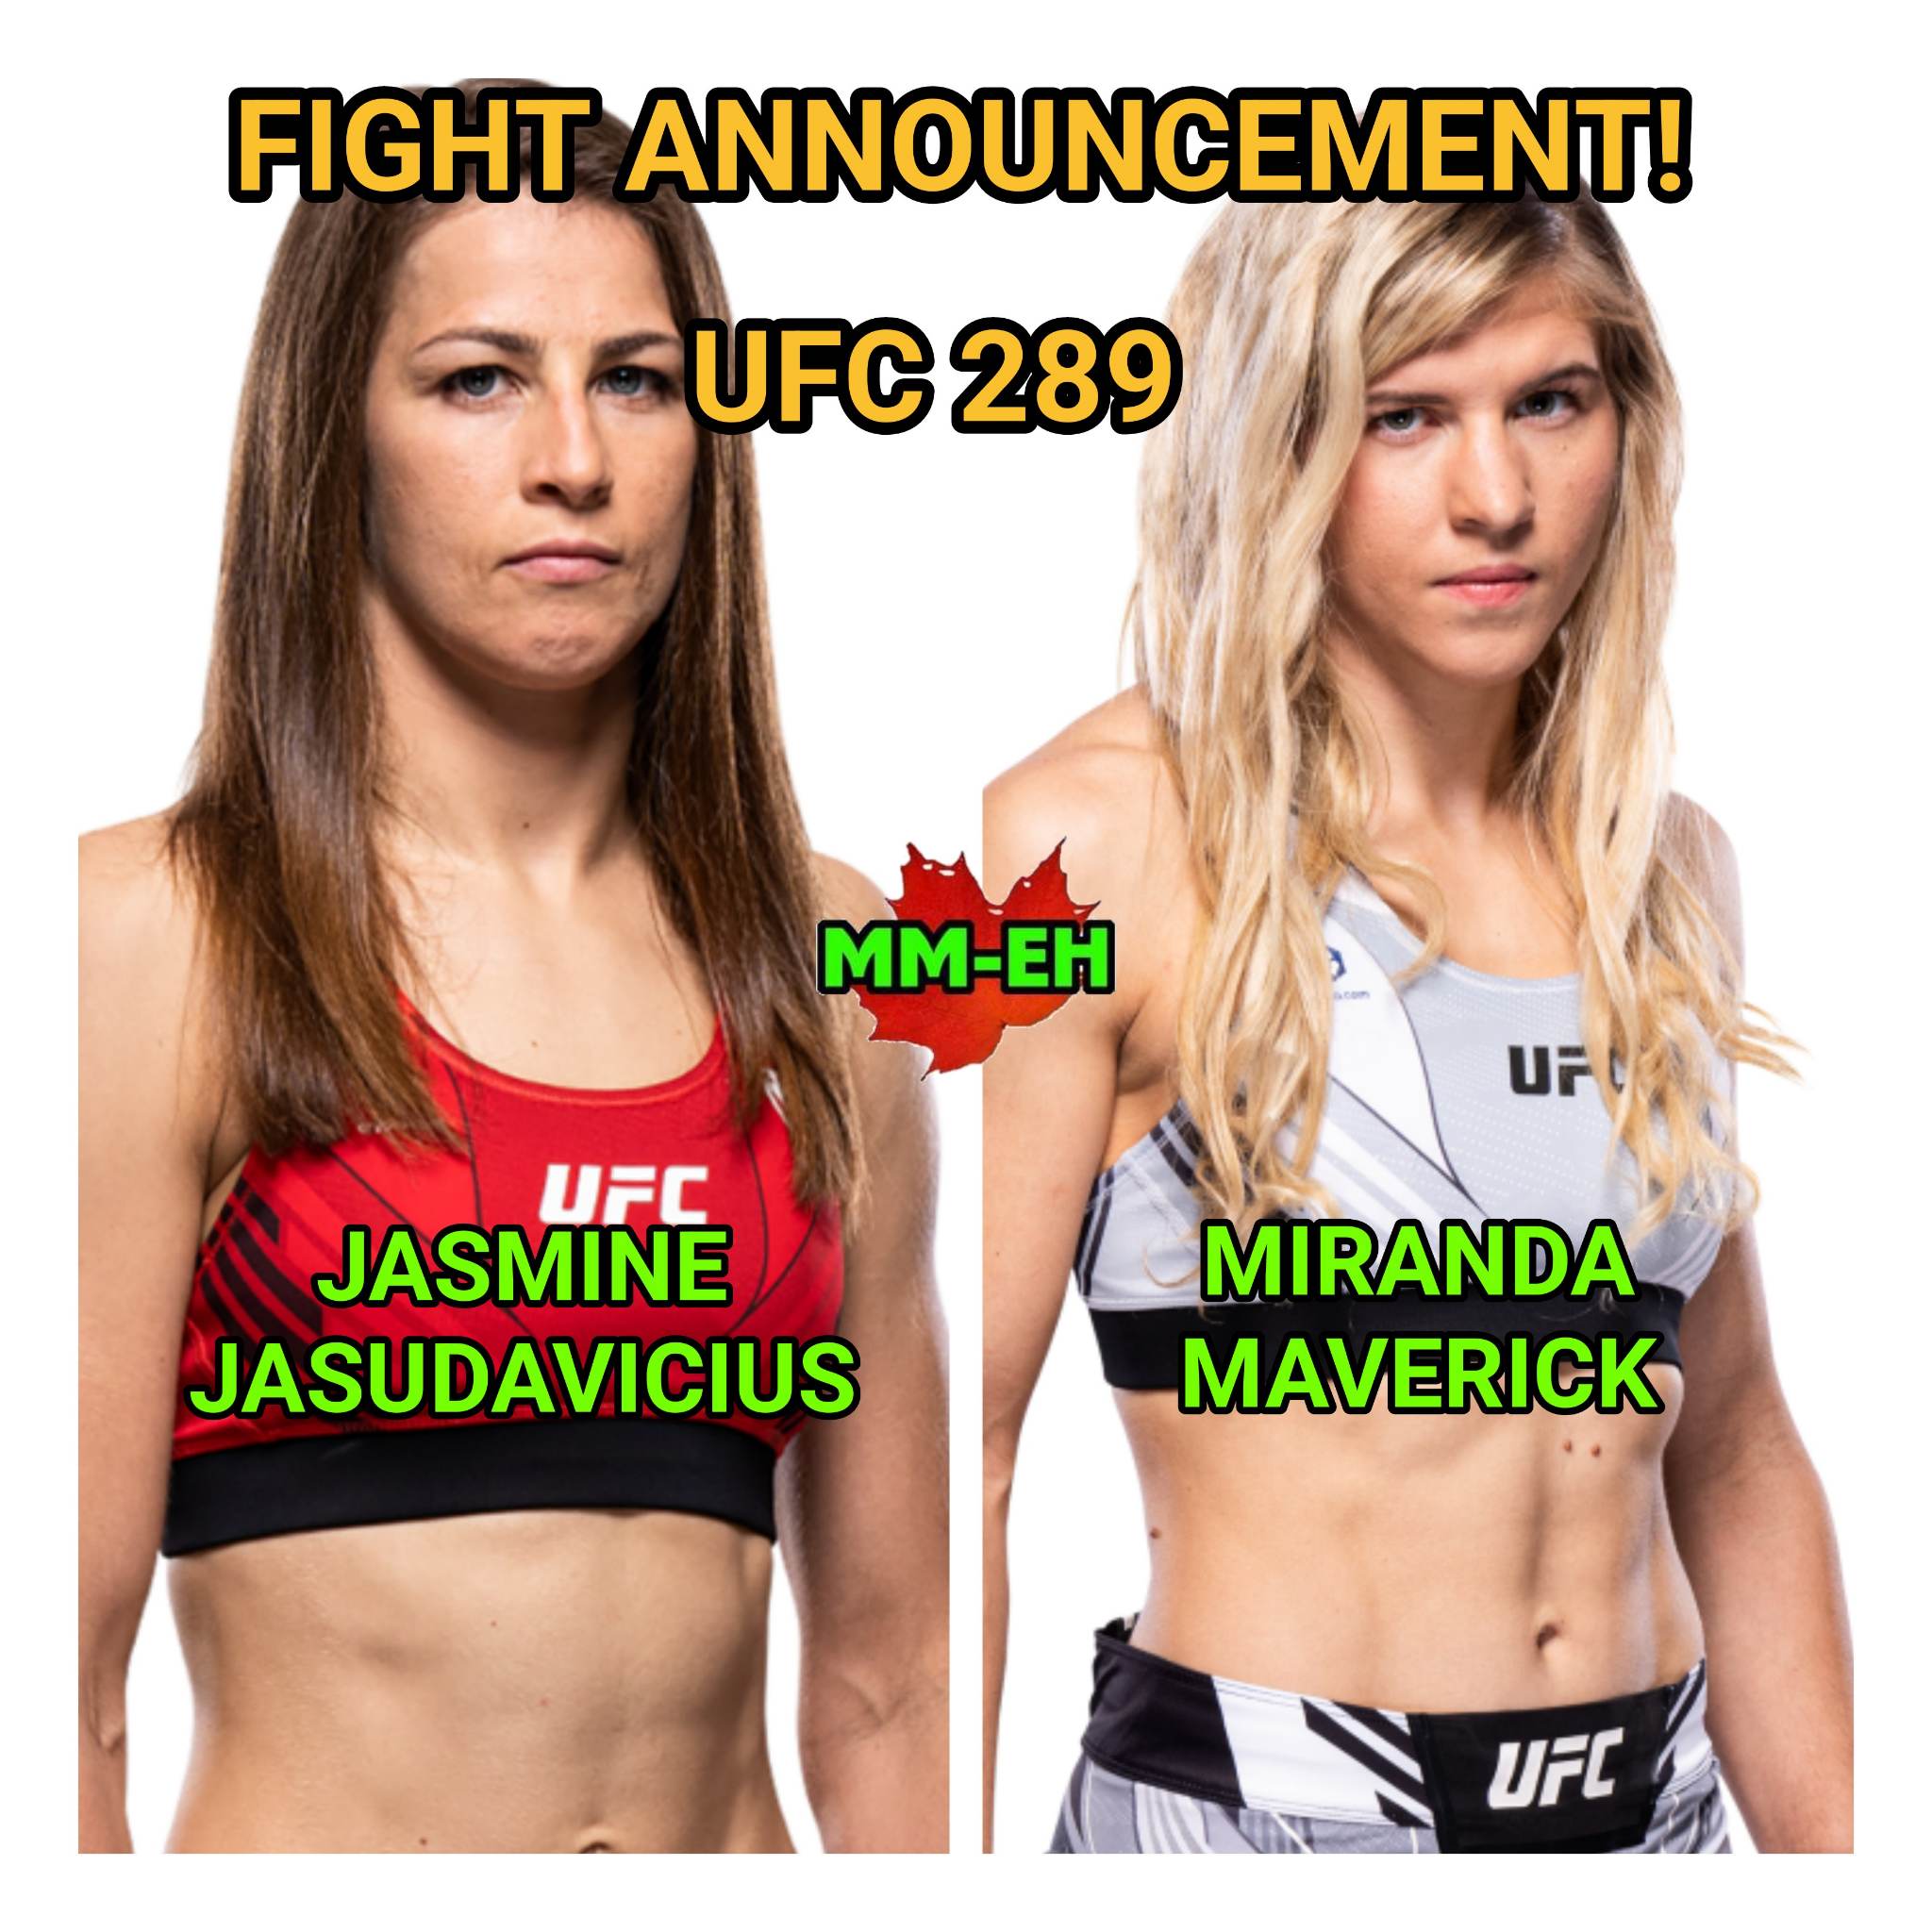 Jasmine Jasudavicius vs Miranda Maverick at UFC 289